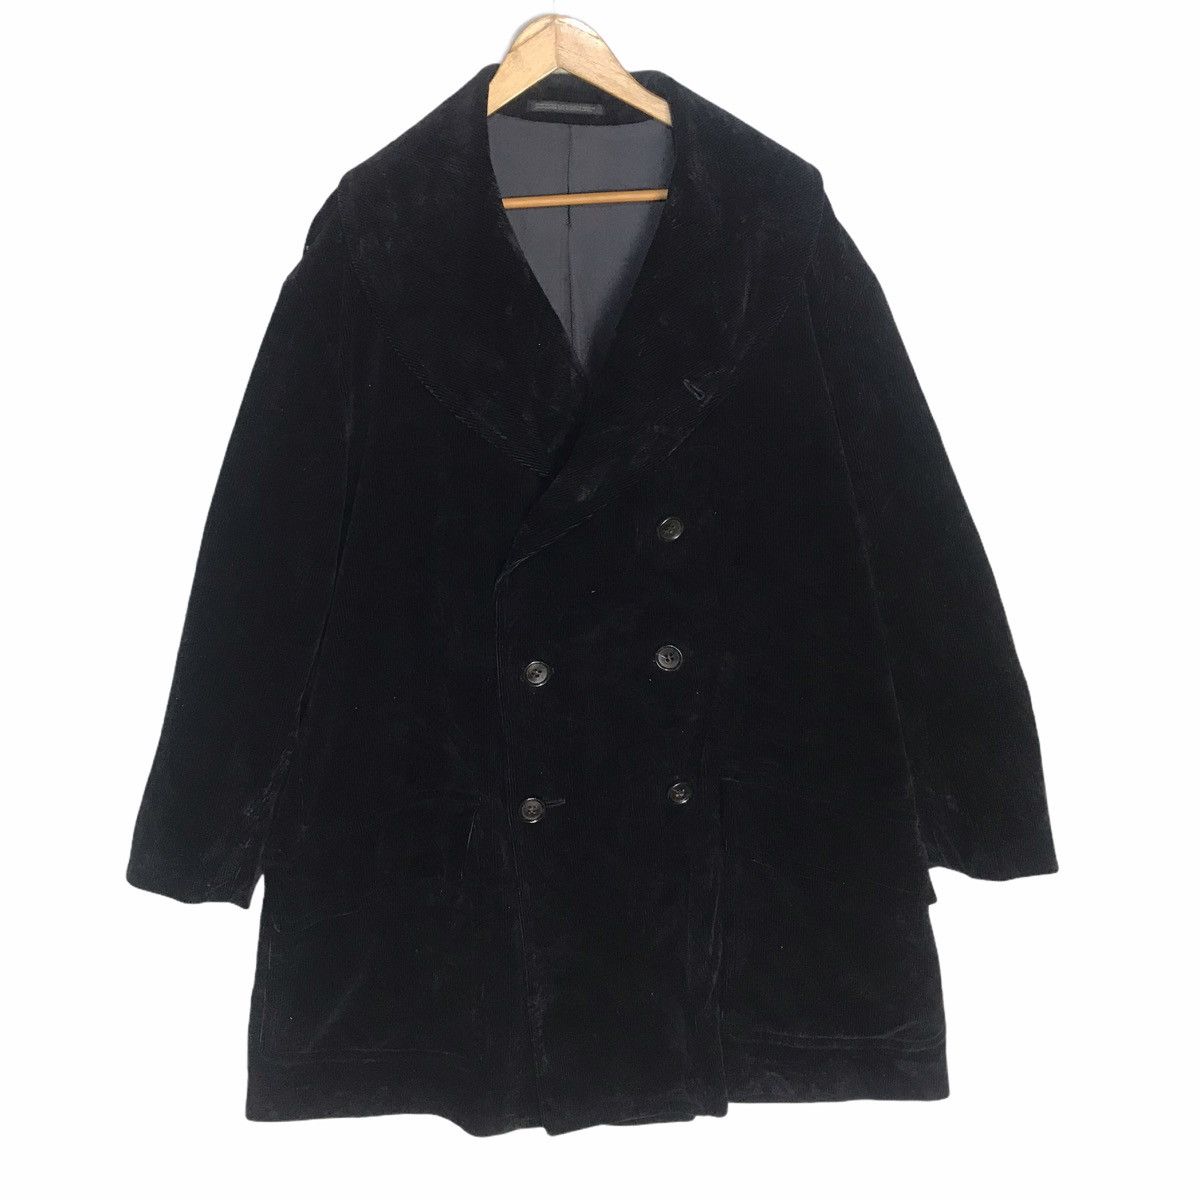 Yohji Yamamoto pour homme oversize black curdoroy coat - 3